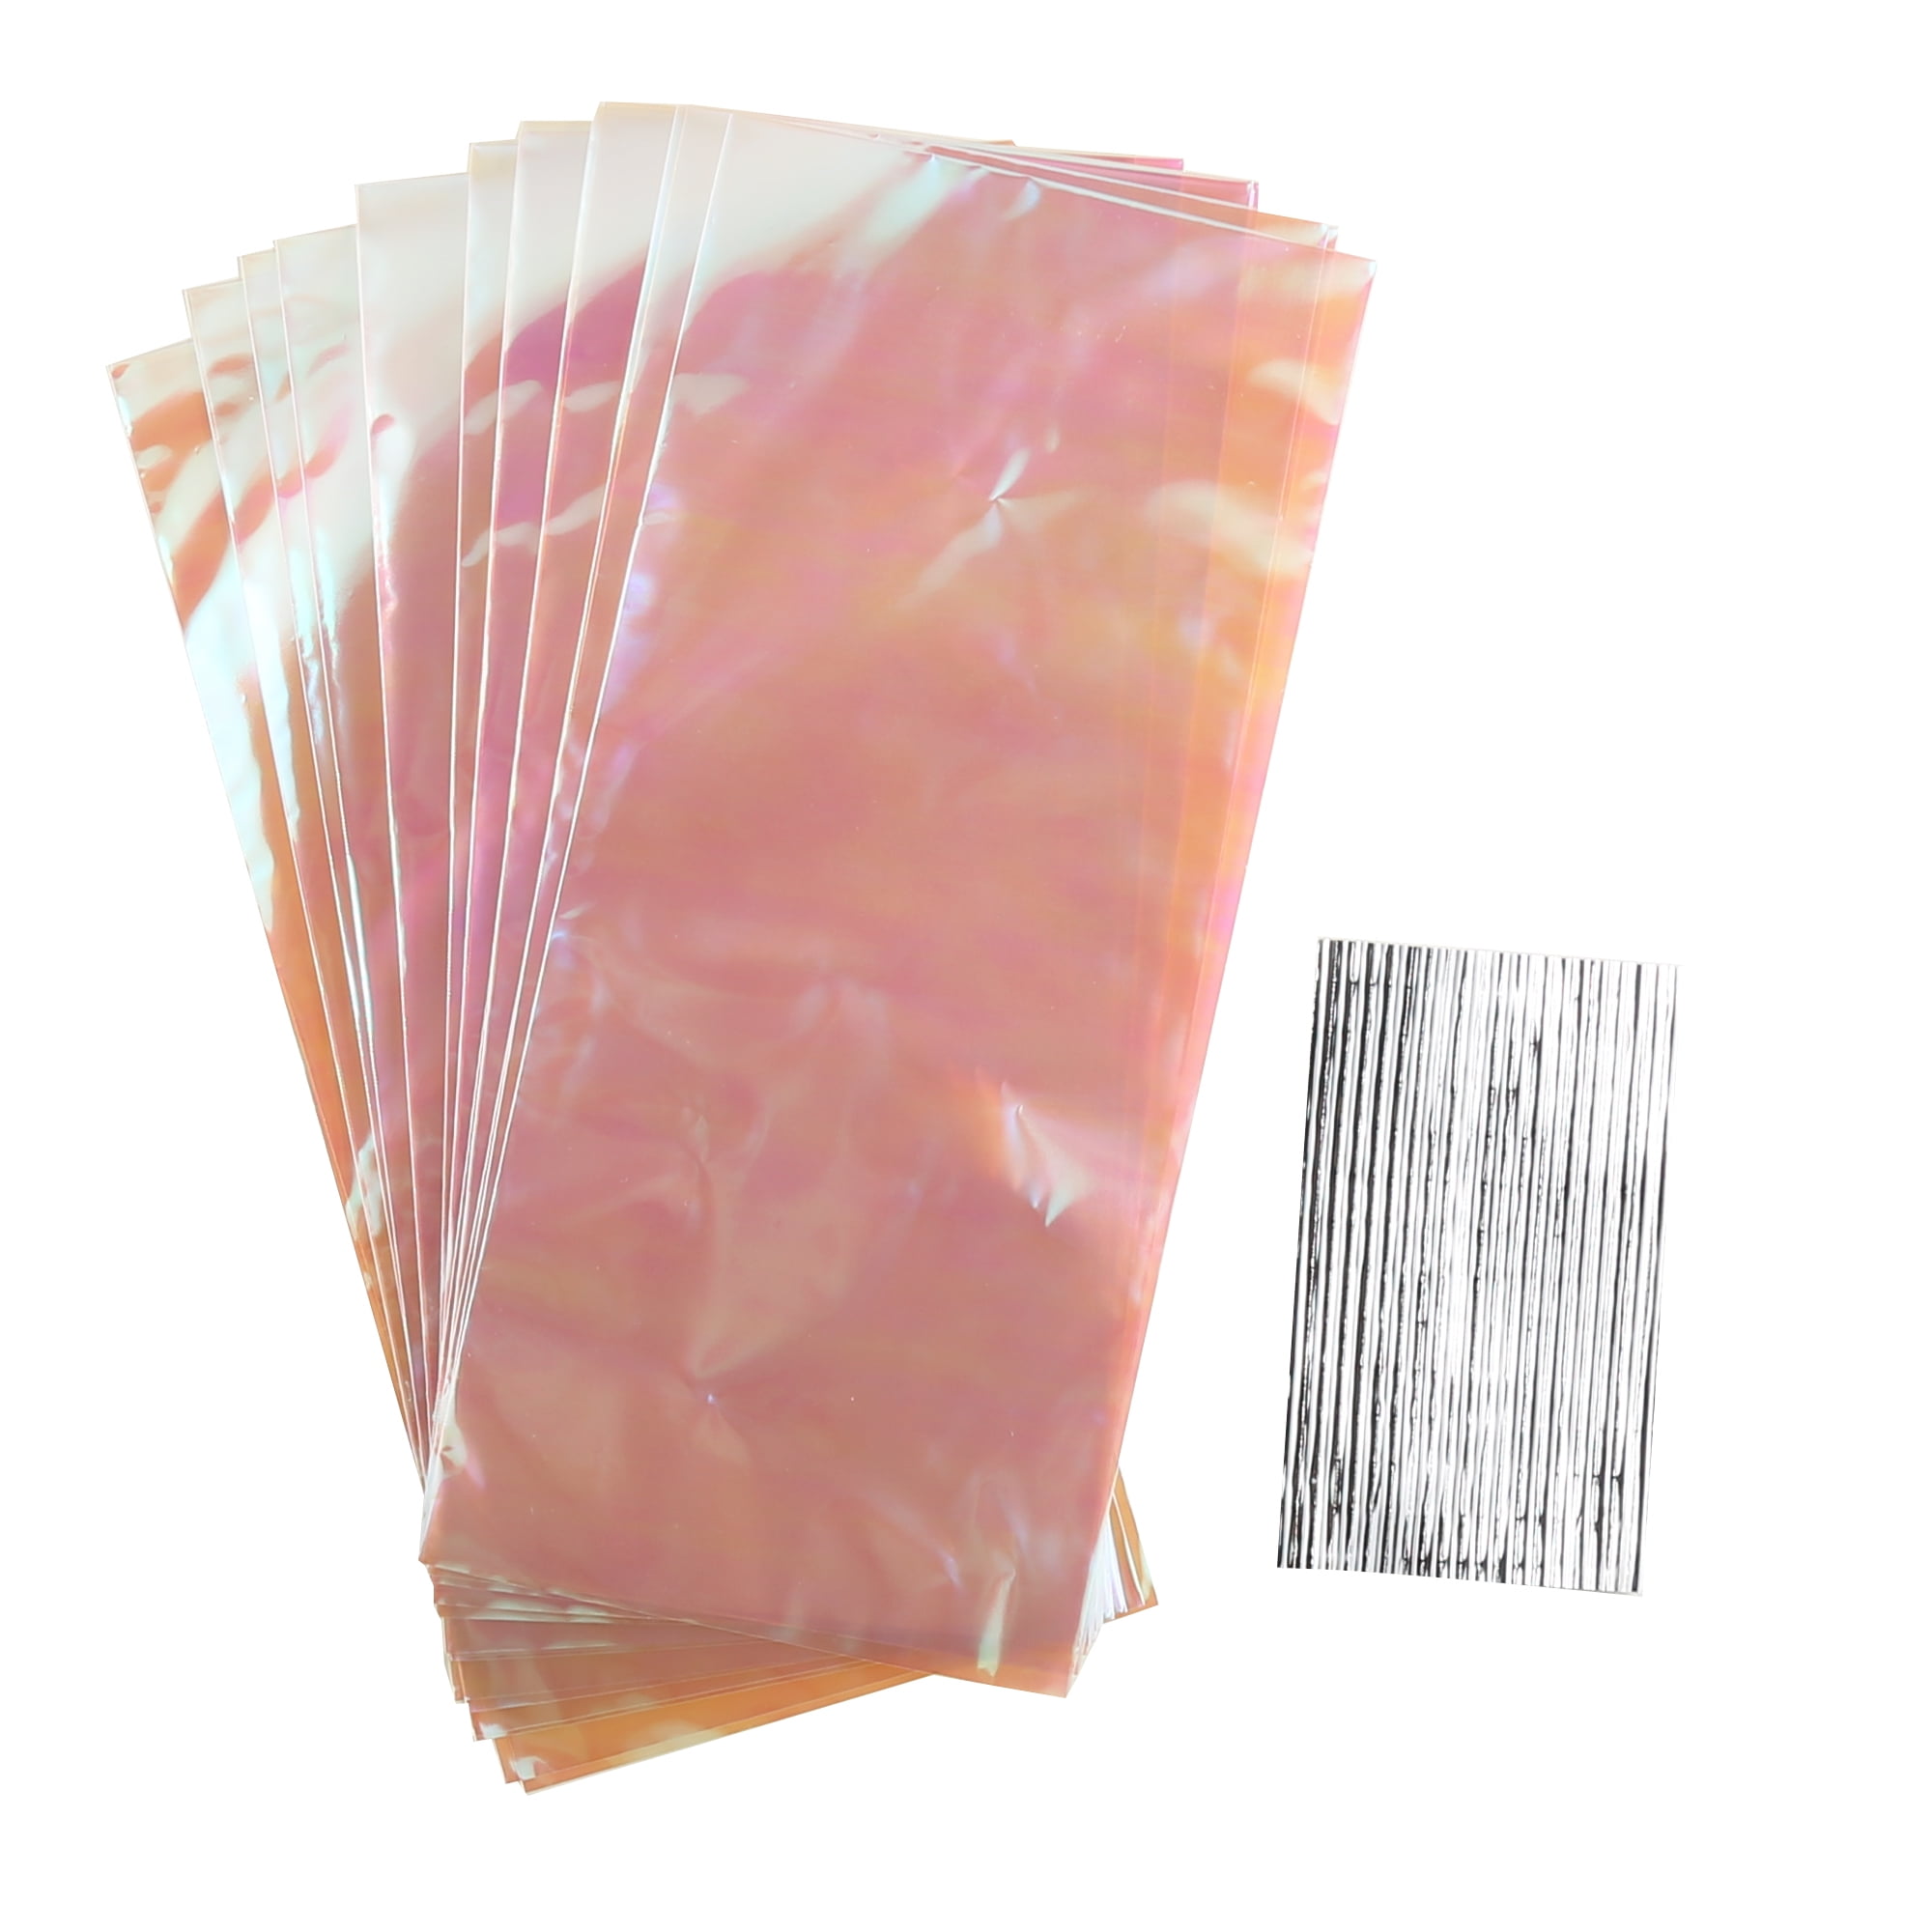 Update more than 169 clear plastic gift bags michaels - kidsdream.edu.vn